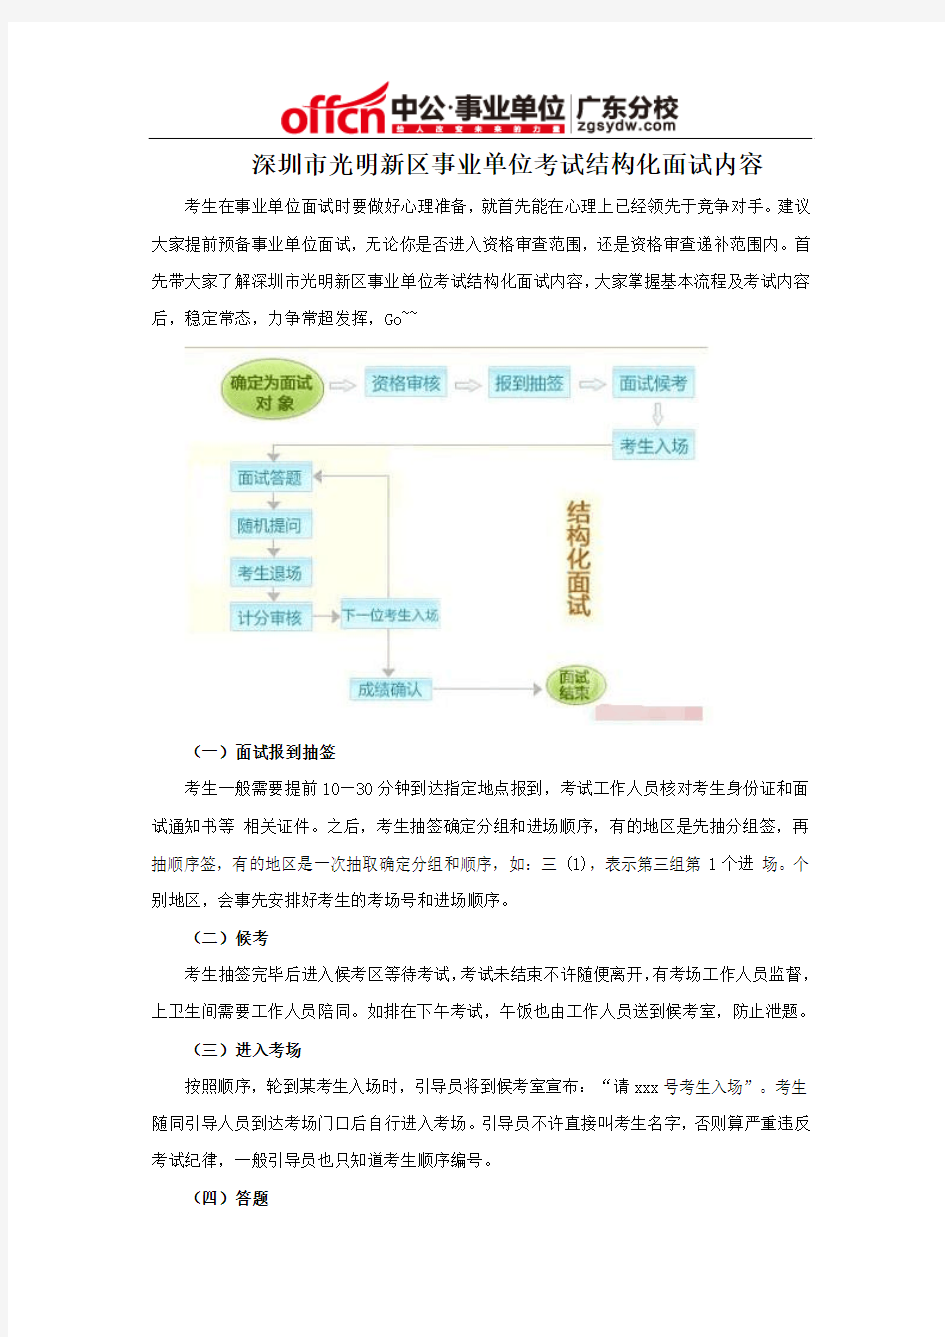 深圳市光明新区事业单位考试结构化面试内容